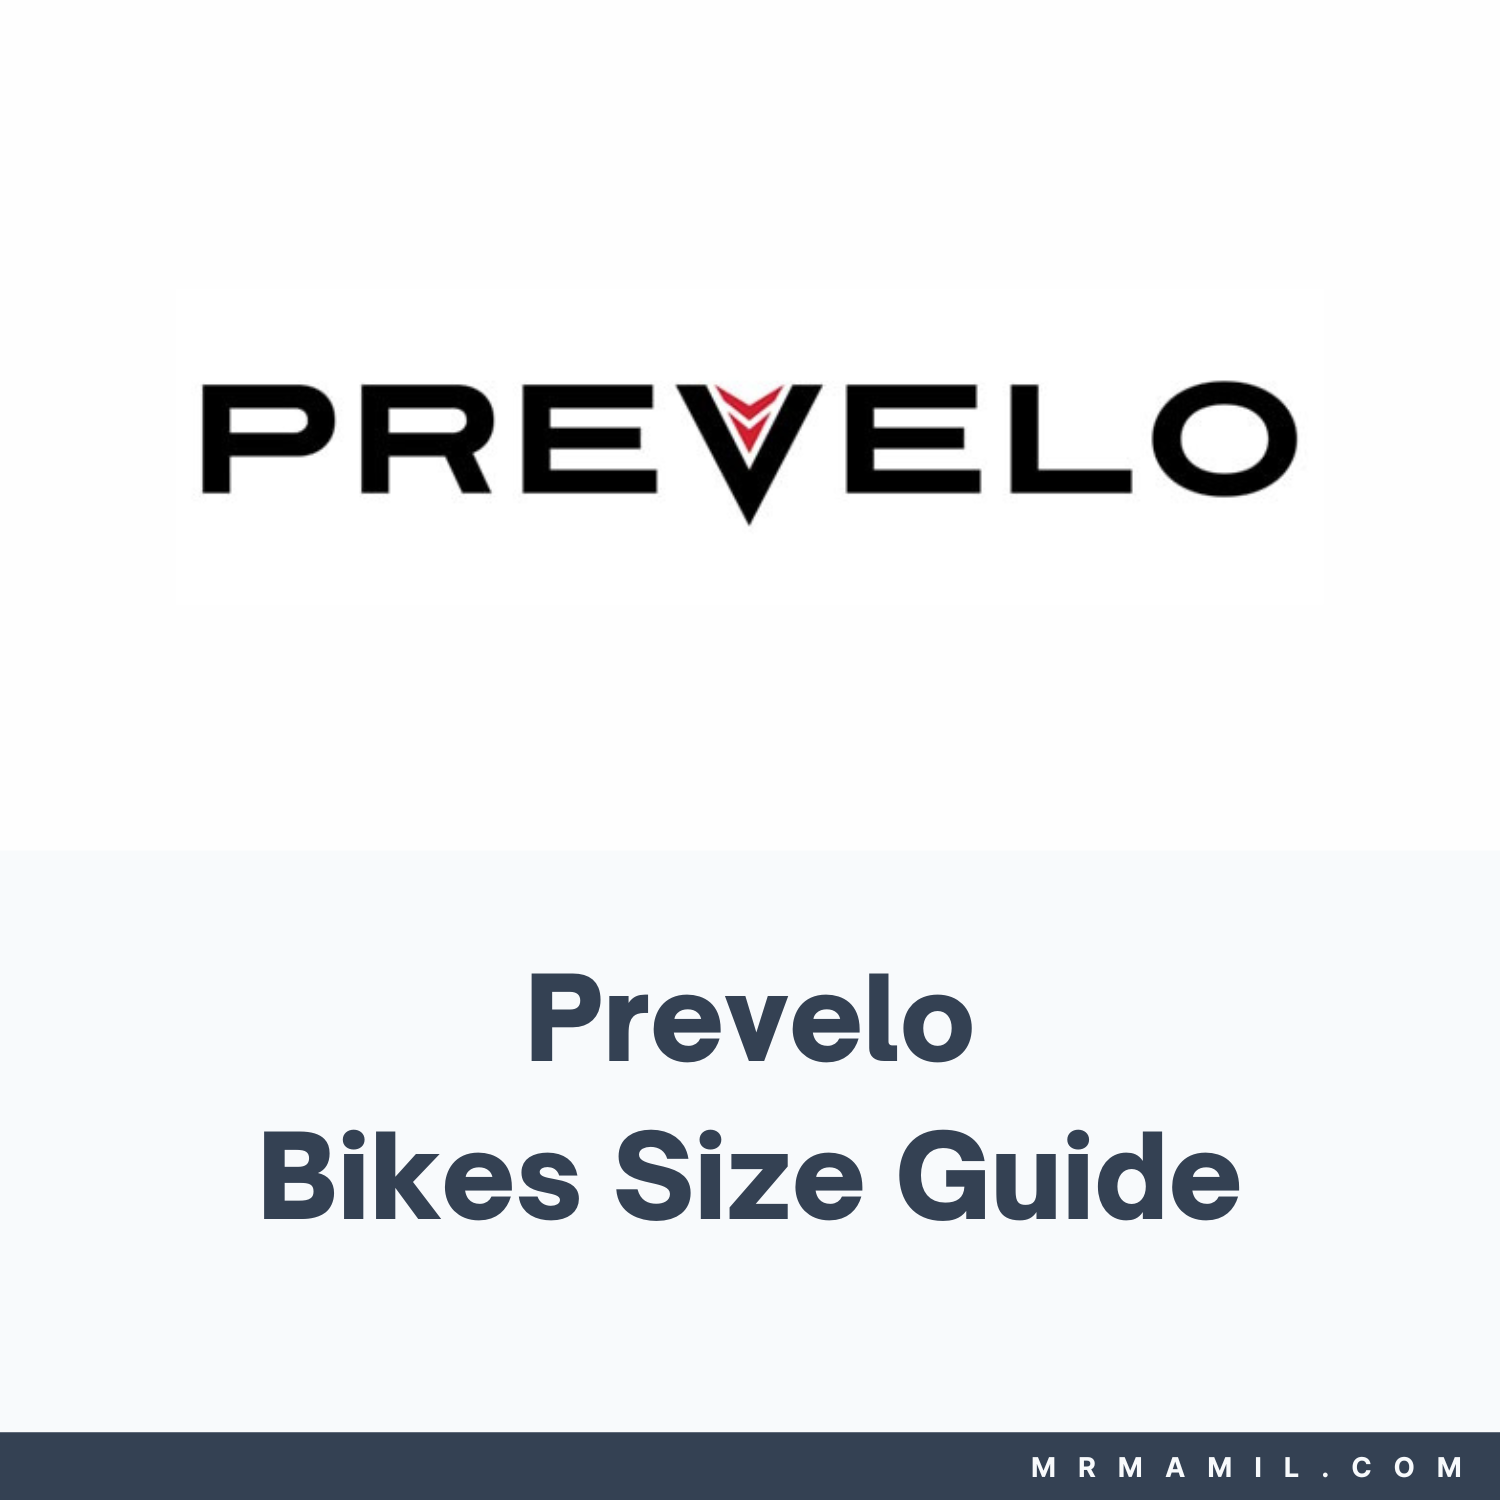 Prevelo Bikes Size Guide